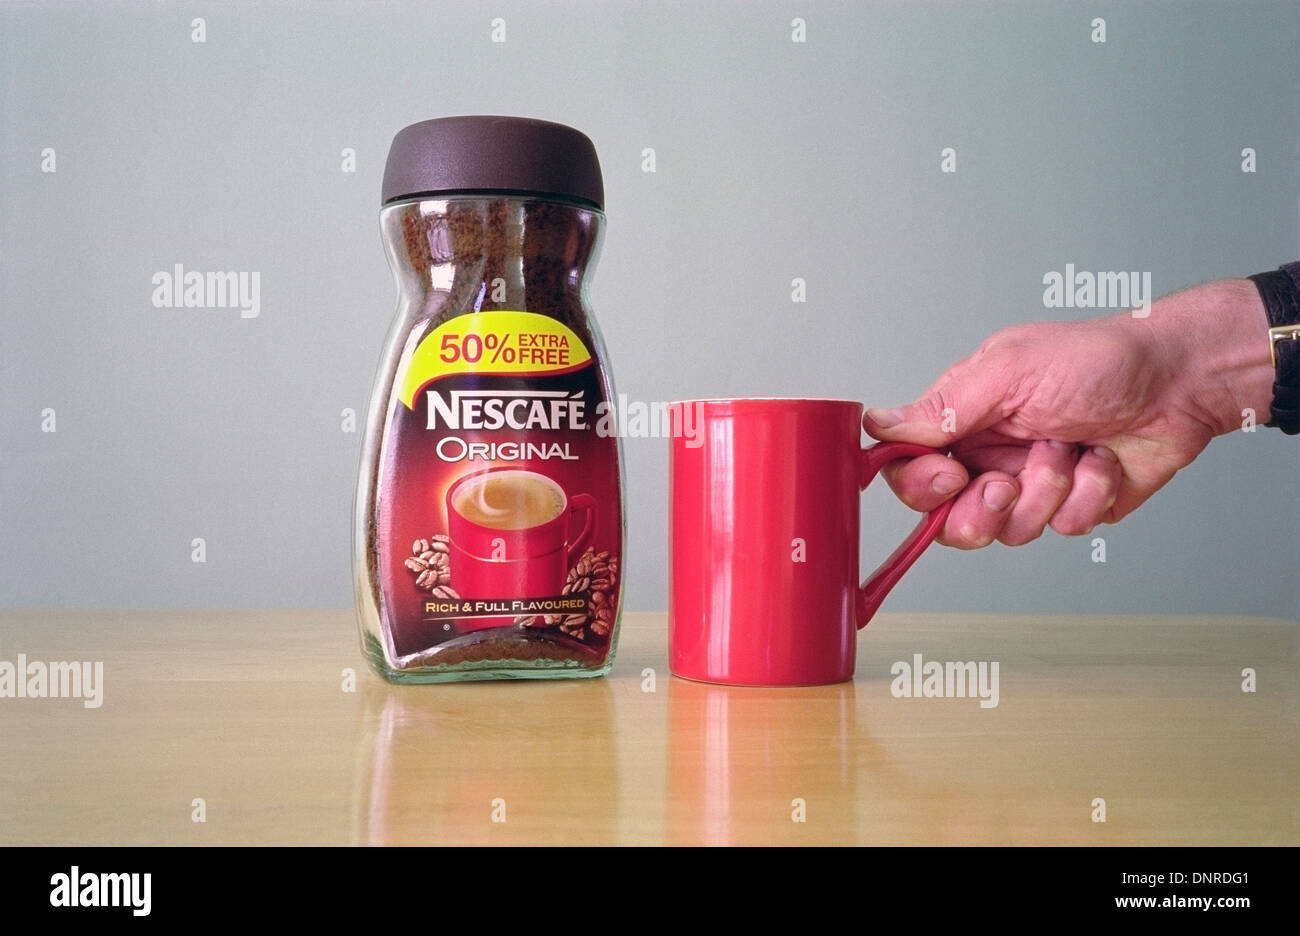 Glas mit Original Nescafe Instant-Kaffee und kaukasischen Mann Hand hob einen roten Becher Modell veröffentlicht Stockfoto